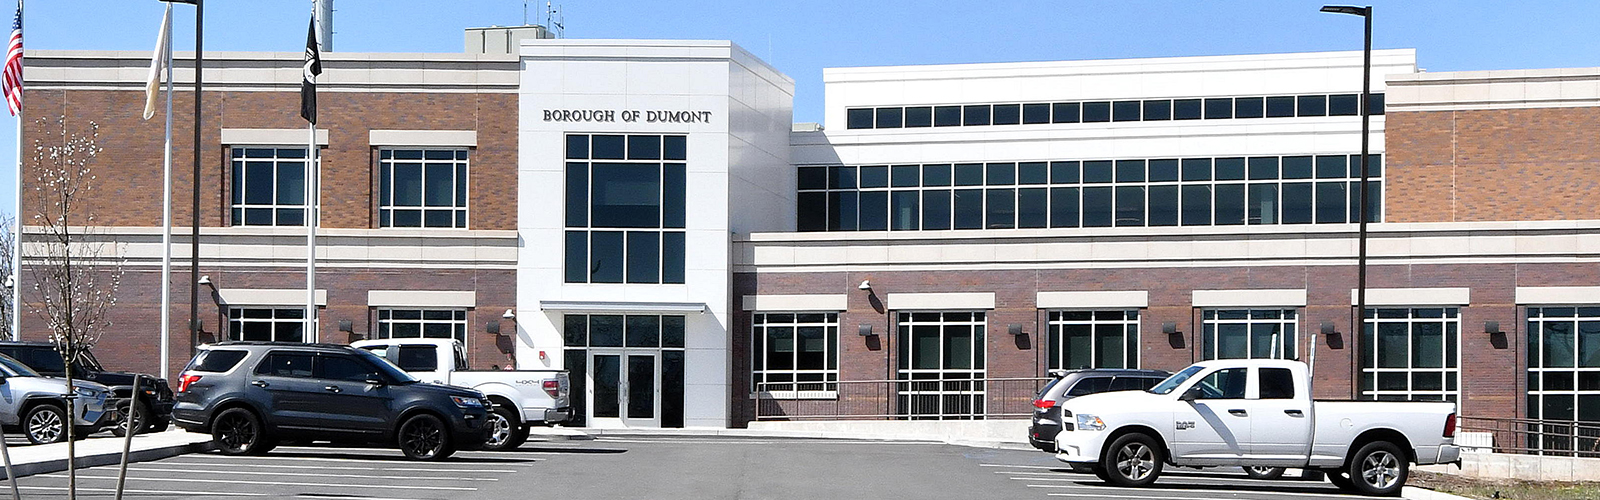 Dumont Borough Departments & Offices